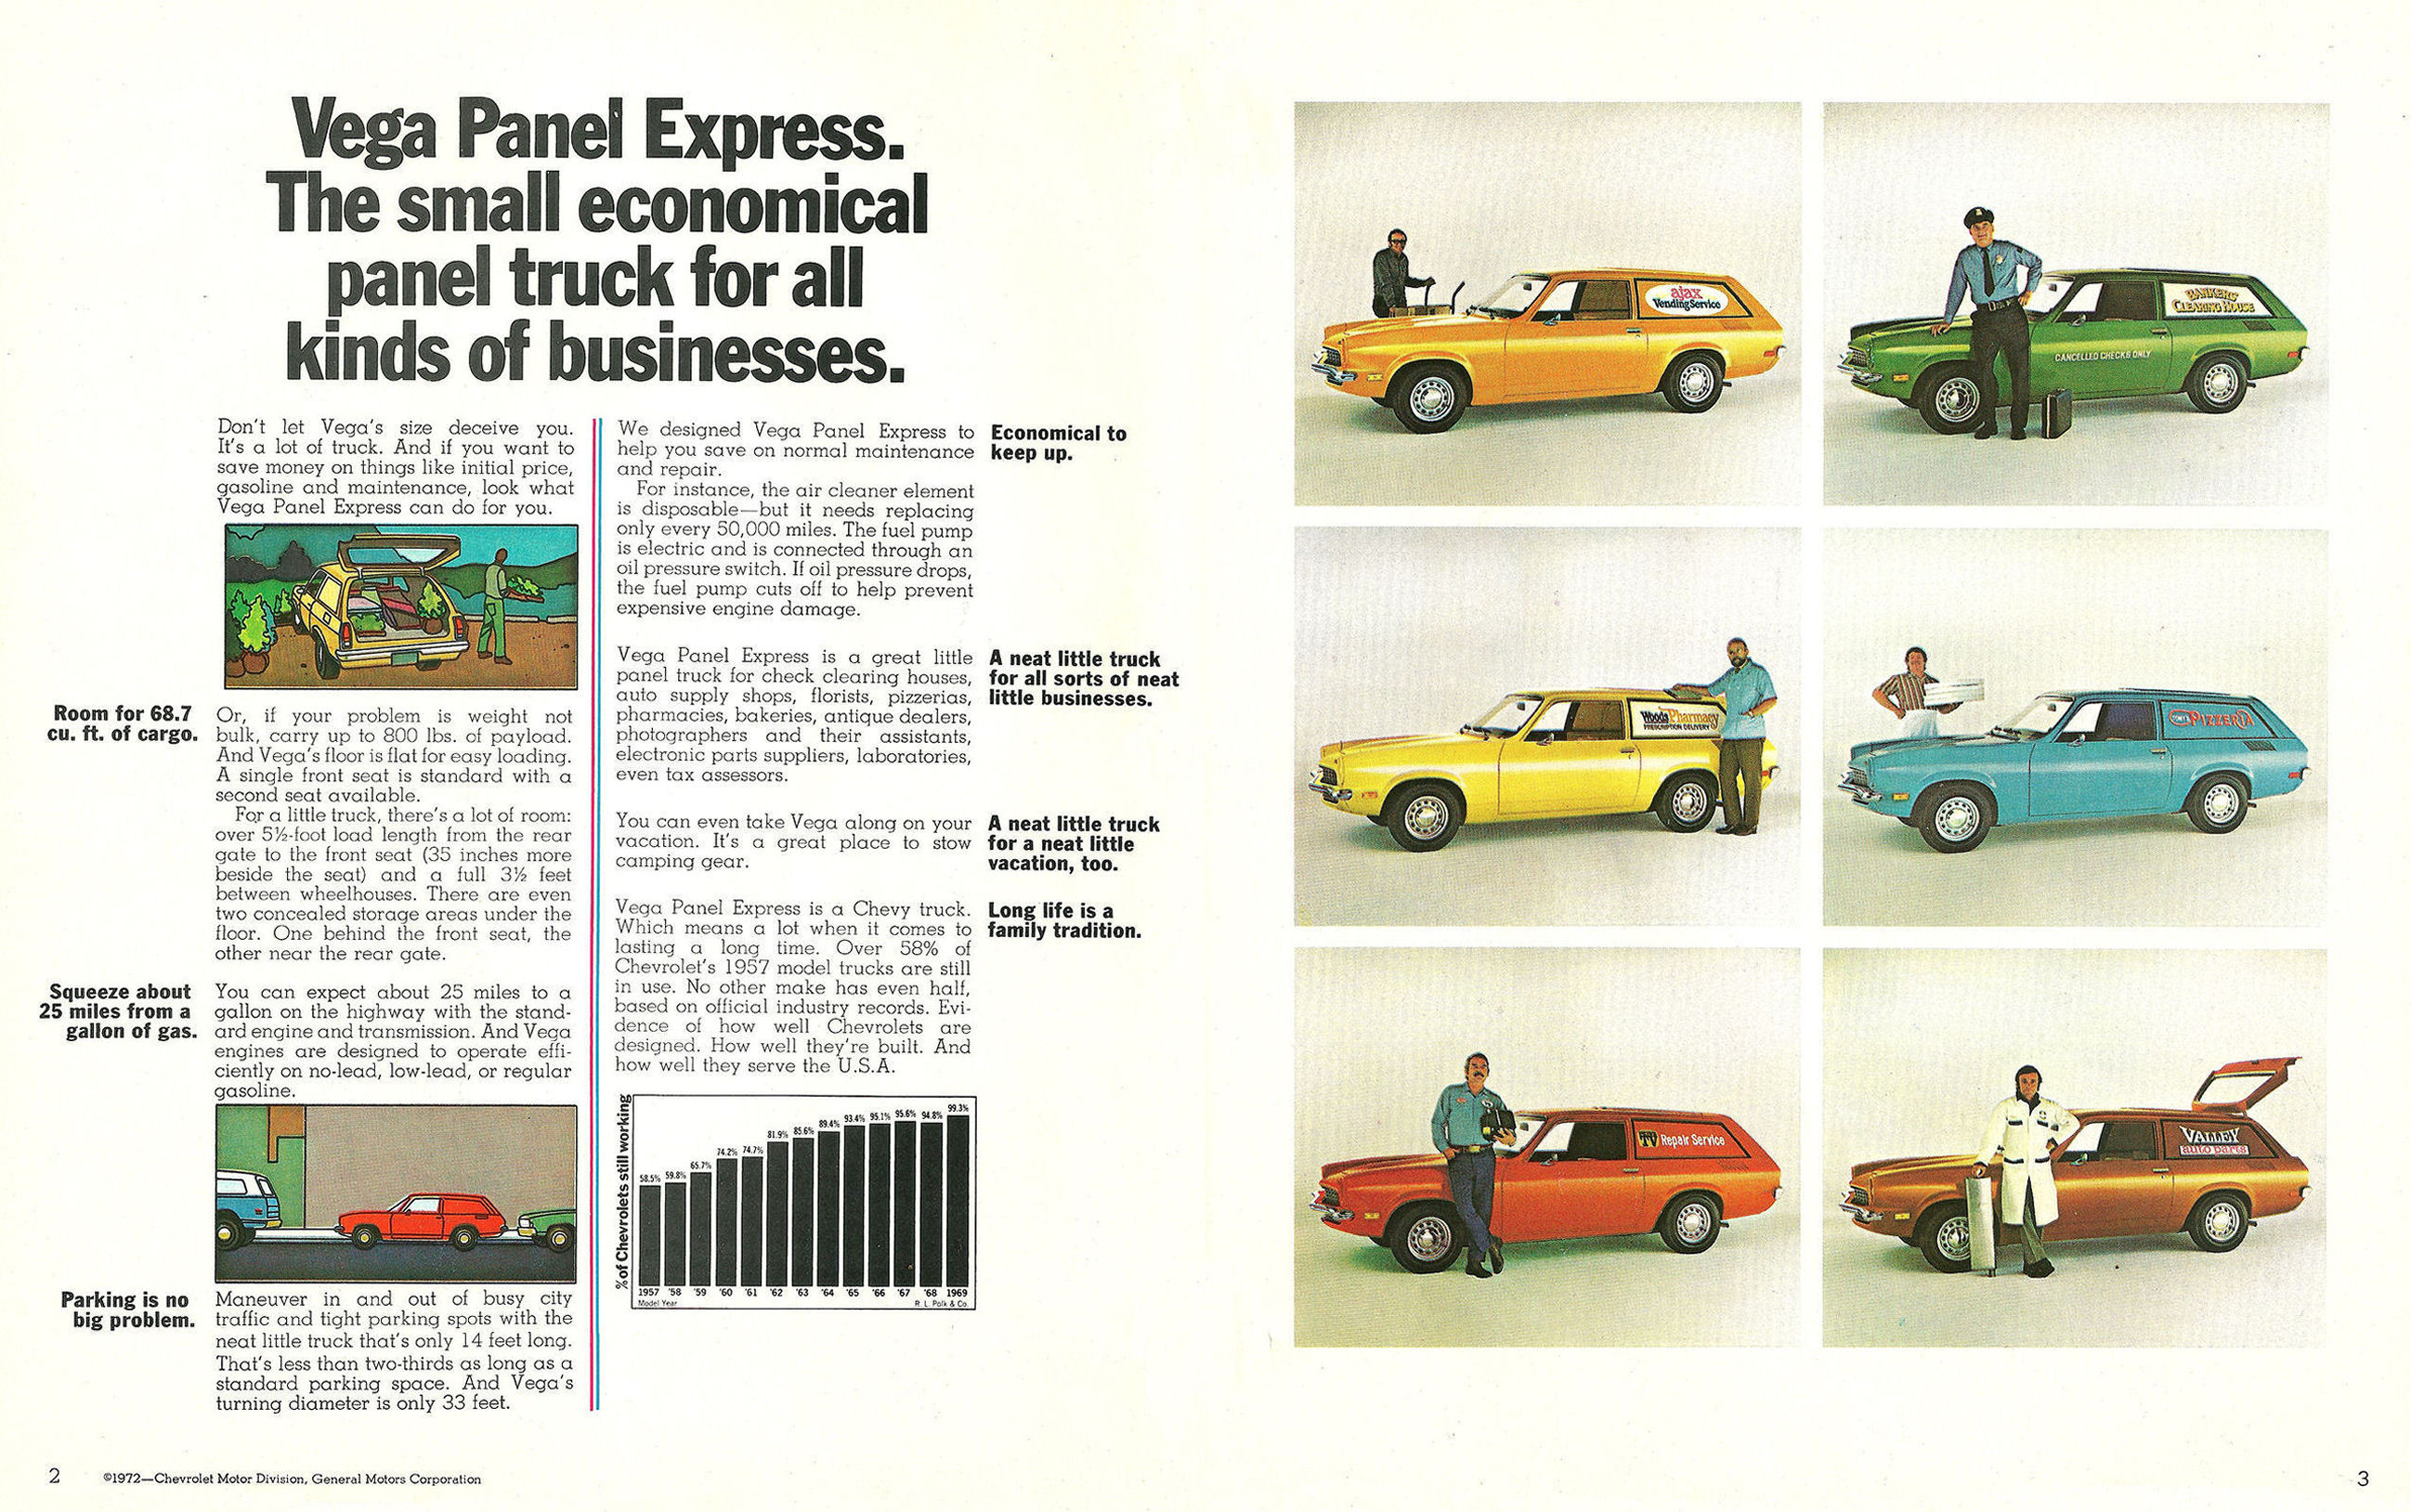 1973_Chevrolet_Vega_Panel_Express-02-03